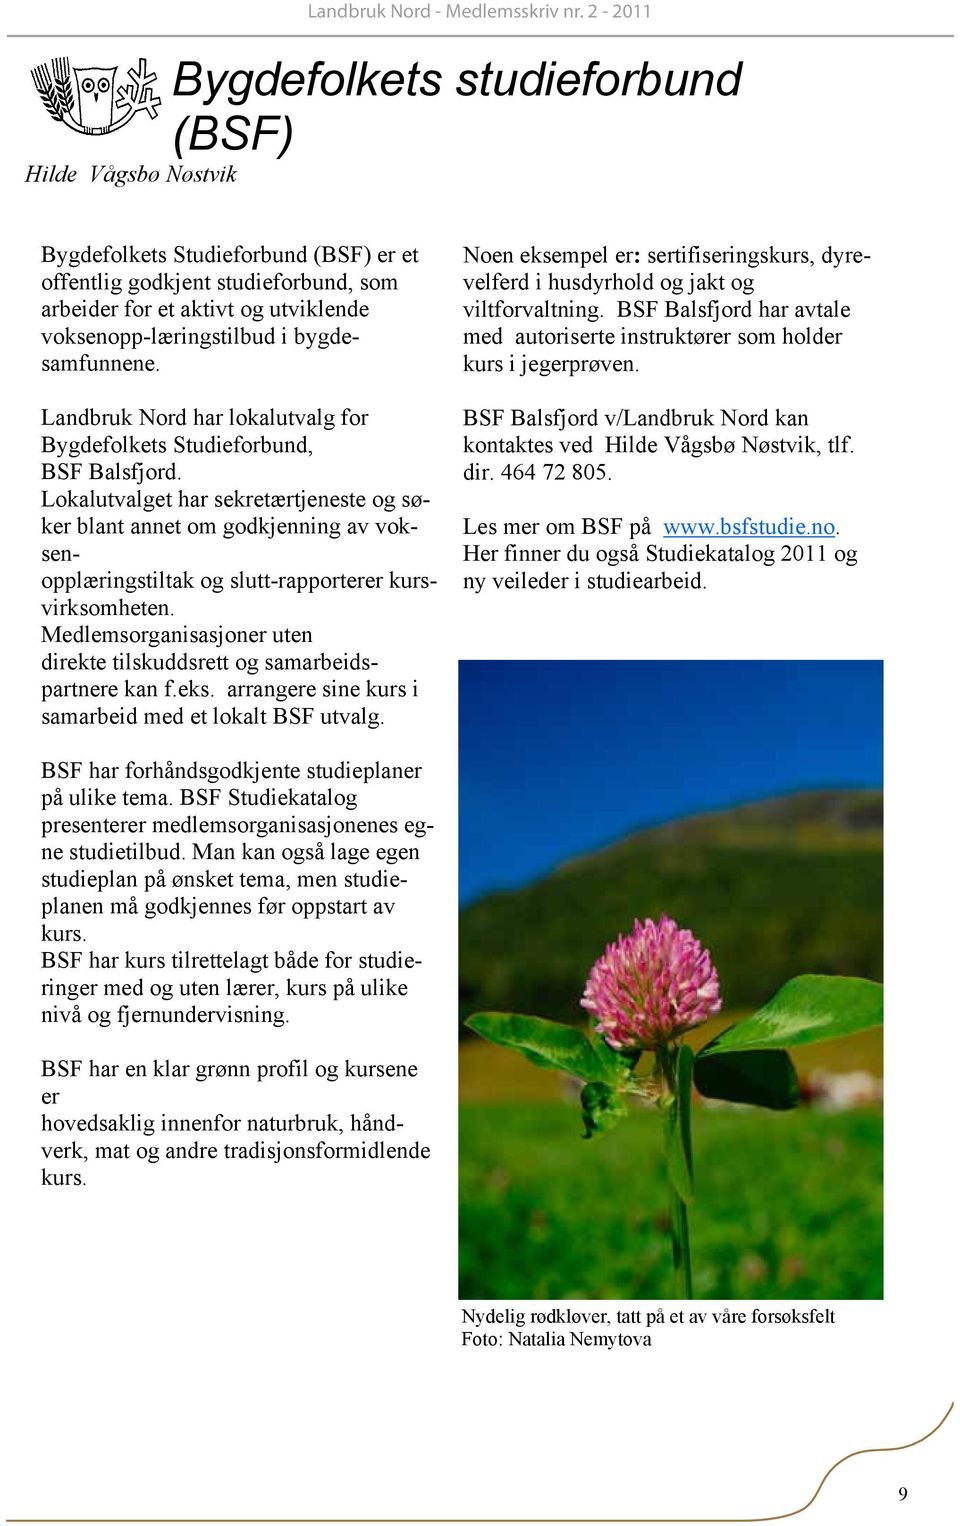 voksenopp-læringstilbud i bygdesamfunnene. Landbruk Nord har lokalutvalg for Bygdefolkets Studieforbund, BSF Balsfjord.